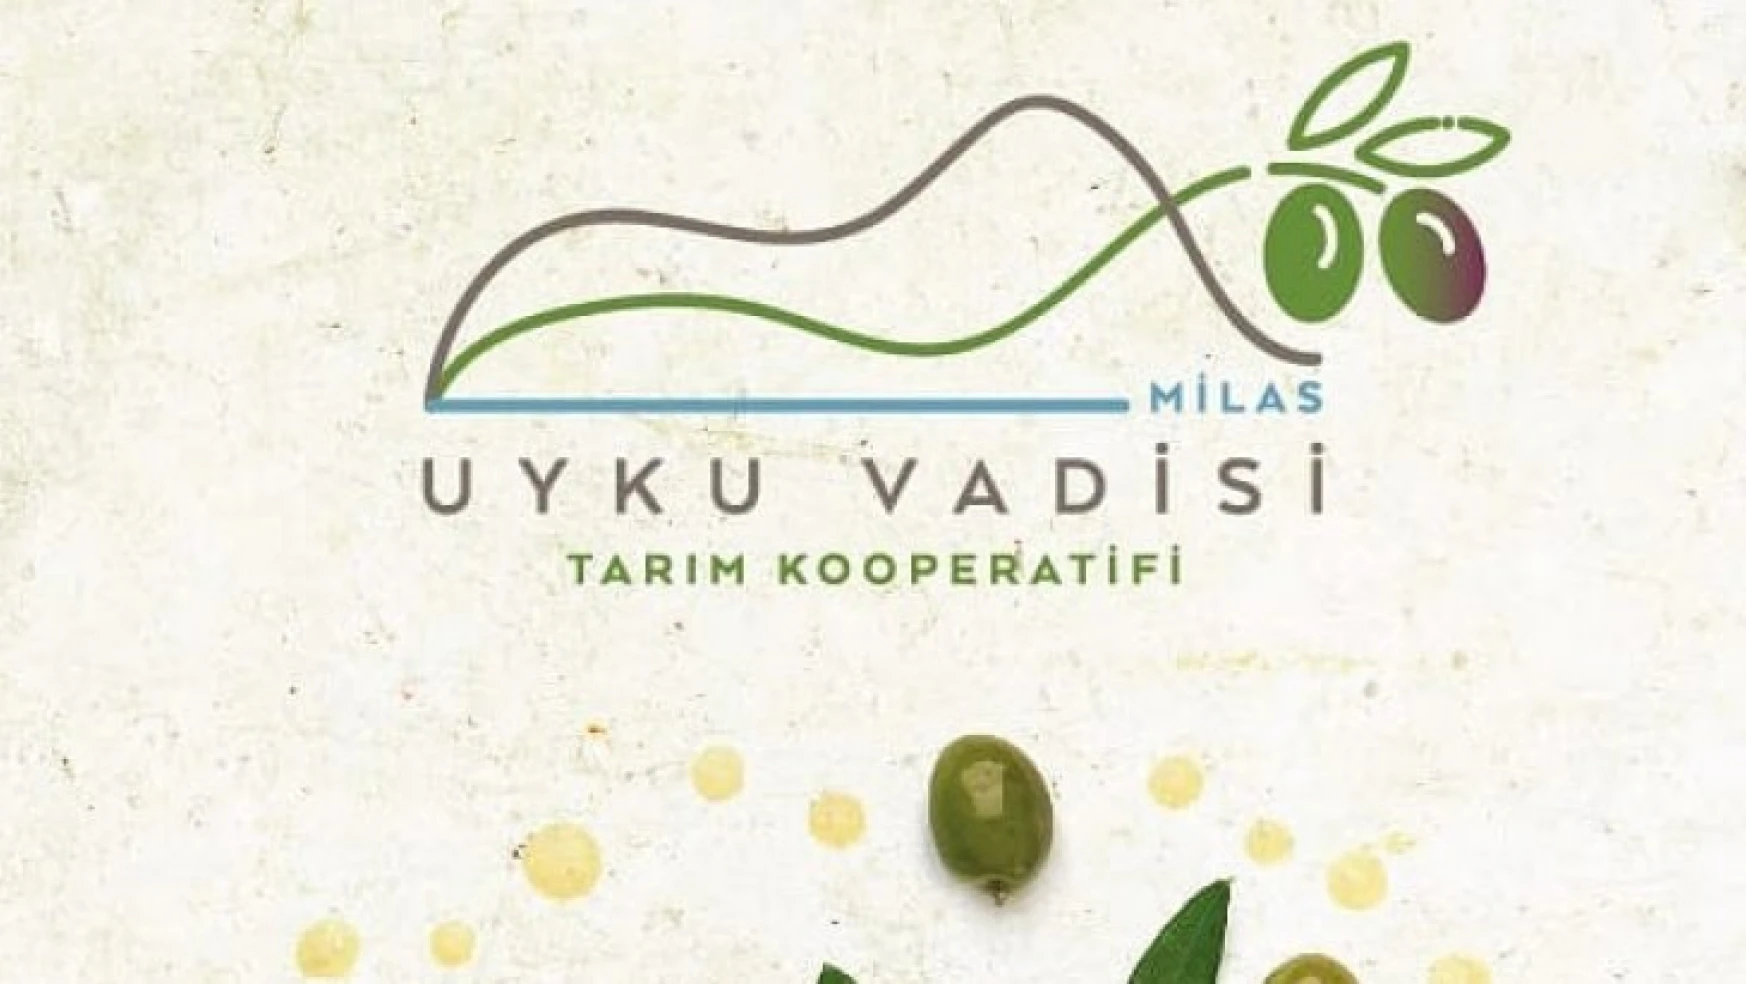 Ankaralı bürokratların tarım kooperatifi Milas'ın zeytinyağını dünyaya tanıtmaya hazırlanıyor